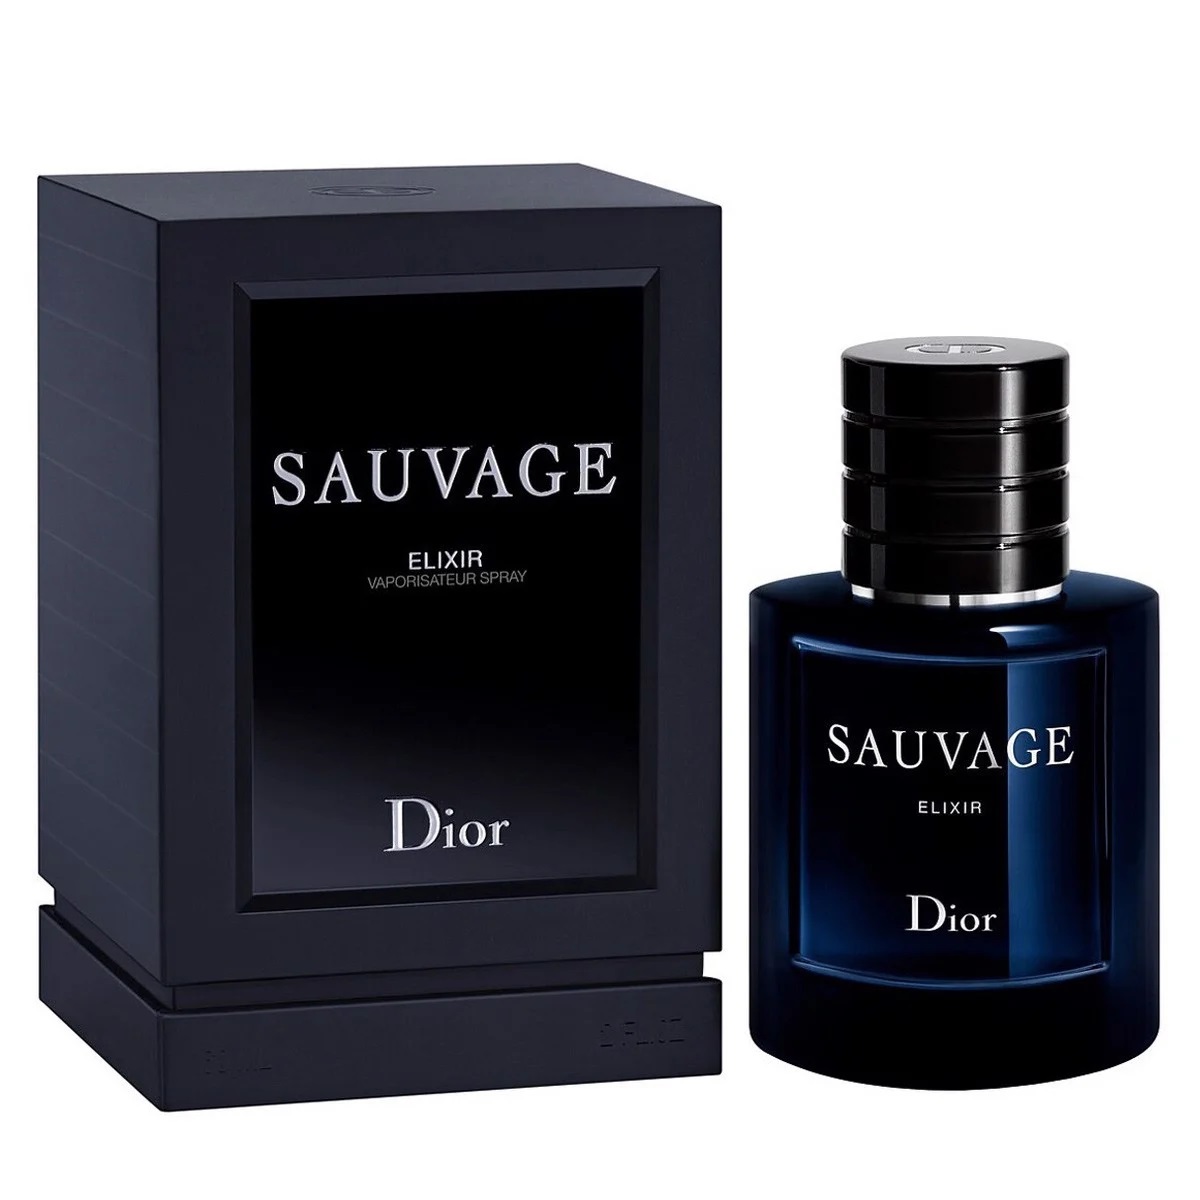 Nước hoa nam mini Dior Sauvage Eau de Parfum 10ml